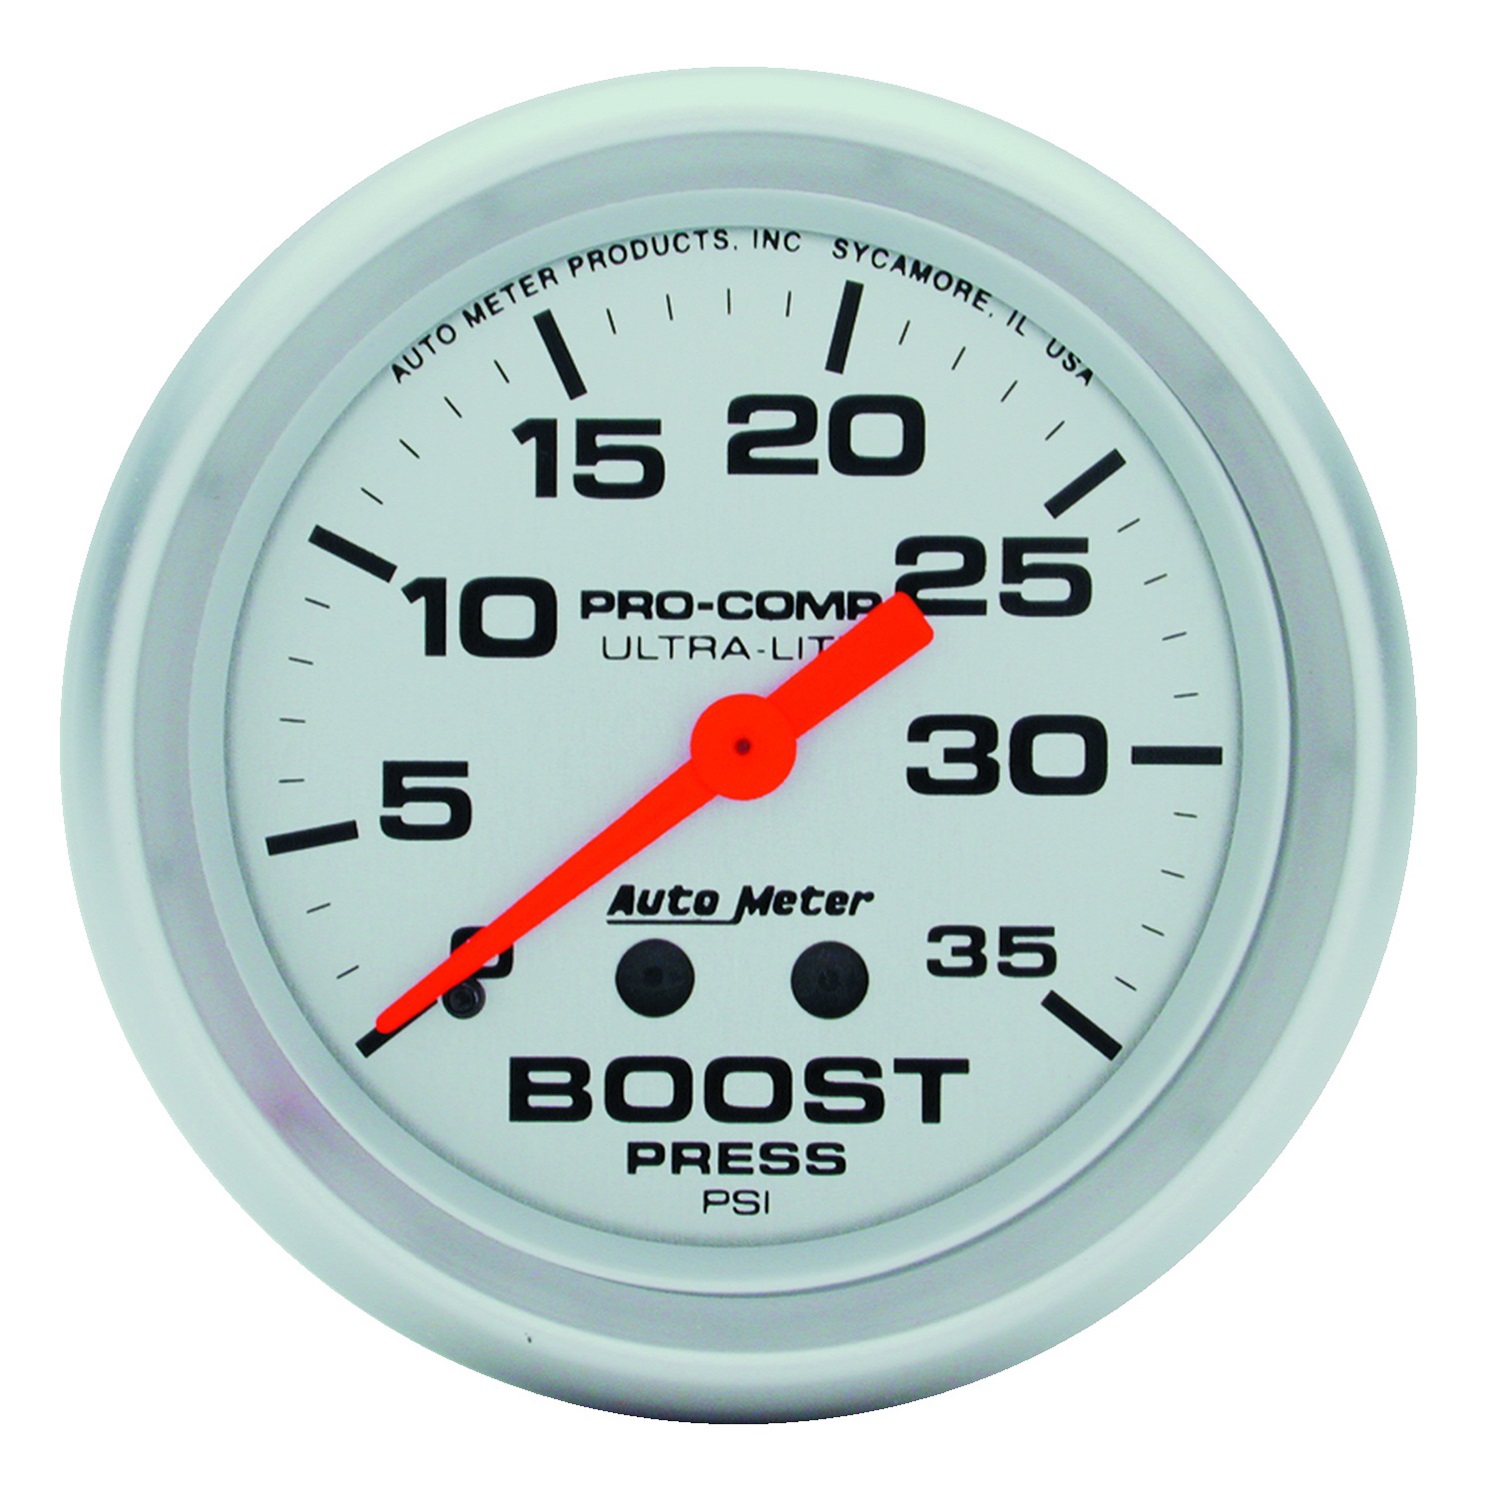 Auto Meter Auto Meter 4404 Ultra-Lite; Mechanical Boost Gauge